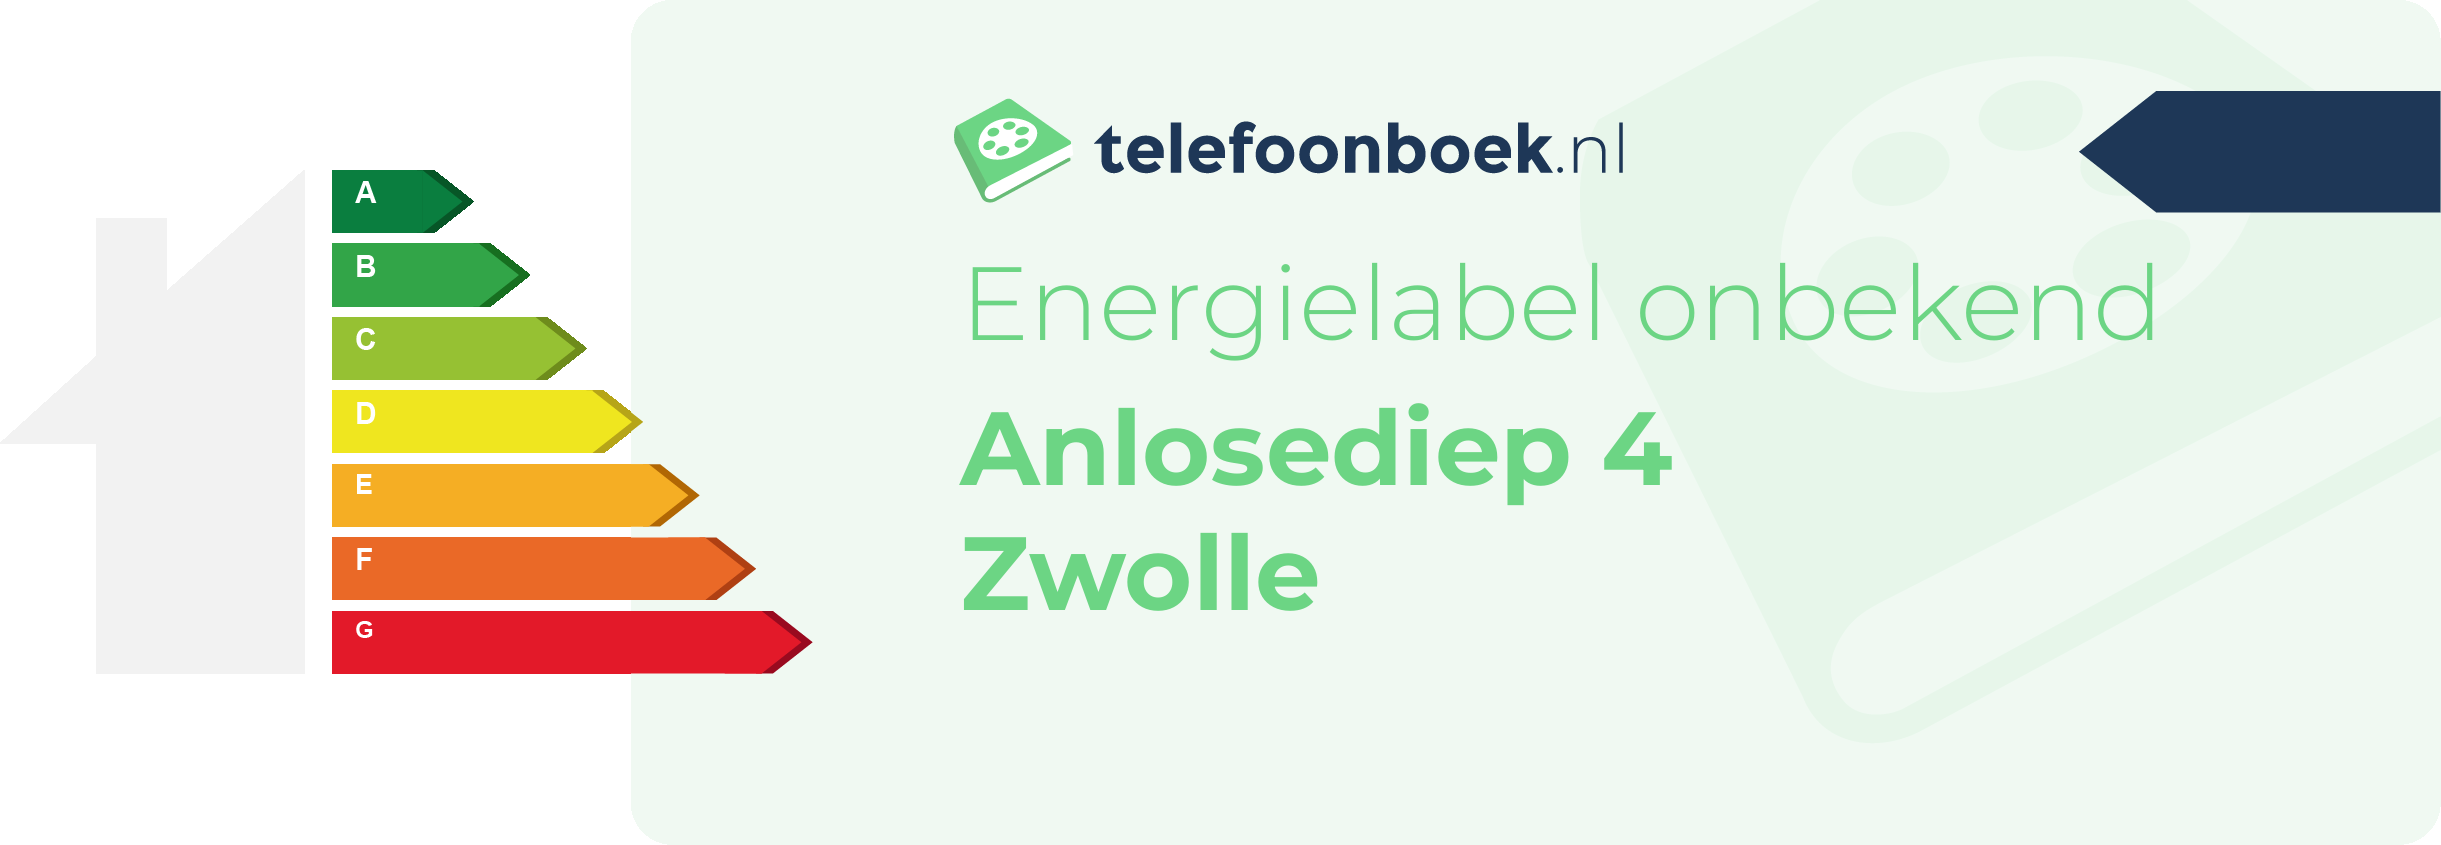 Energielabel Anlosediep 4 Zwolle